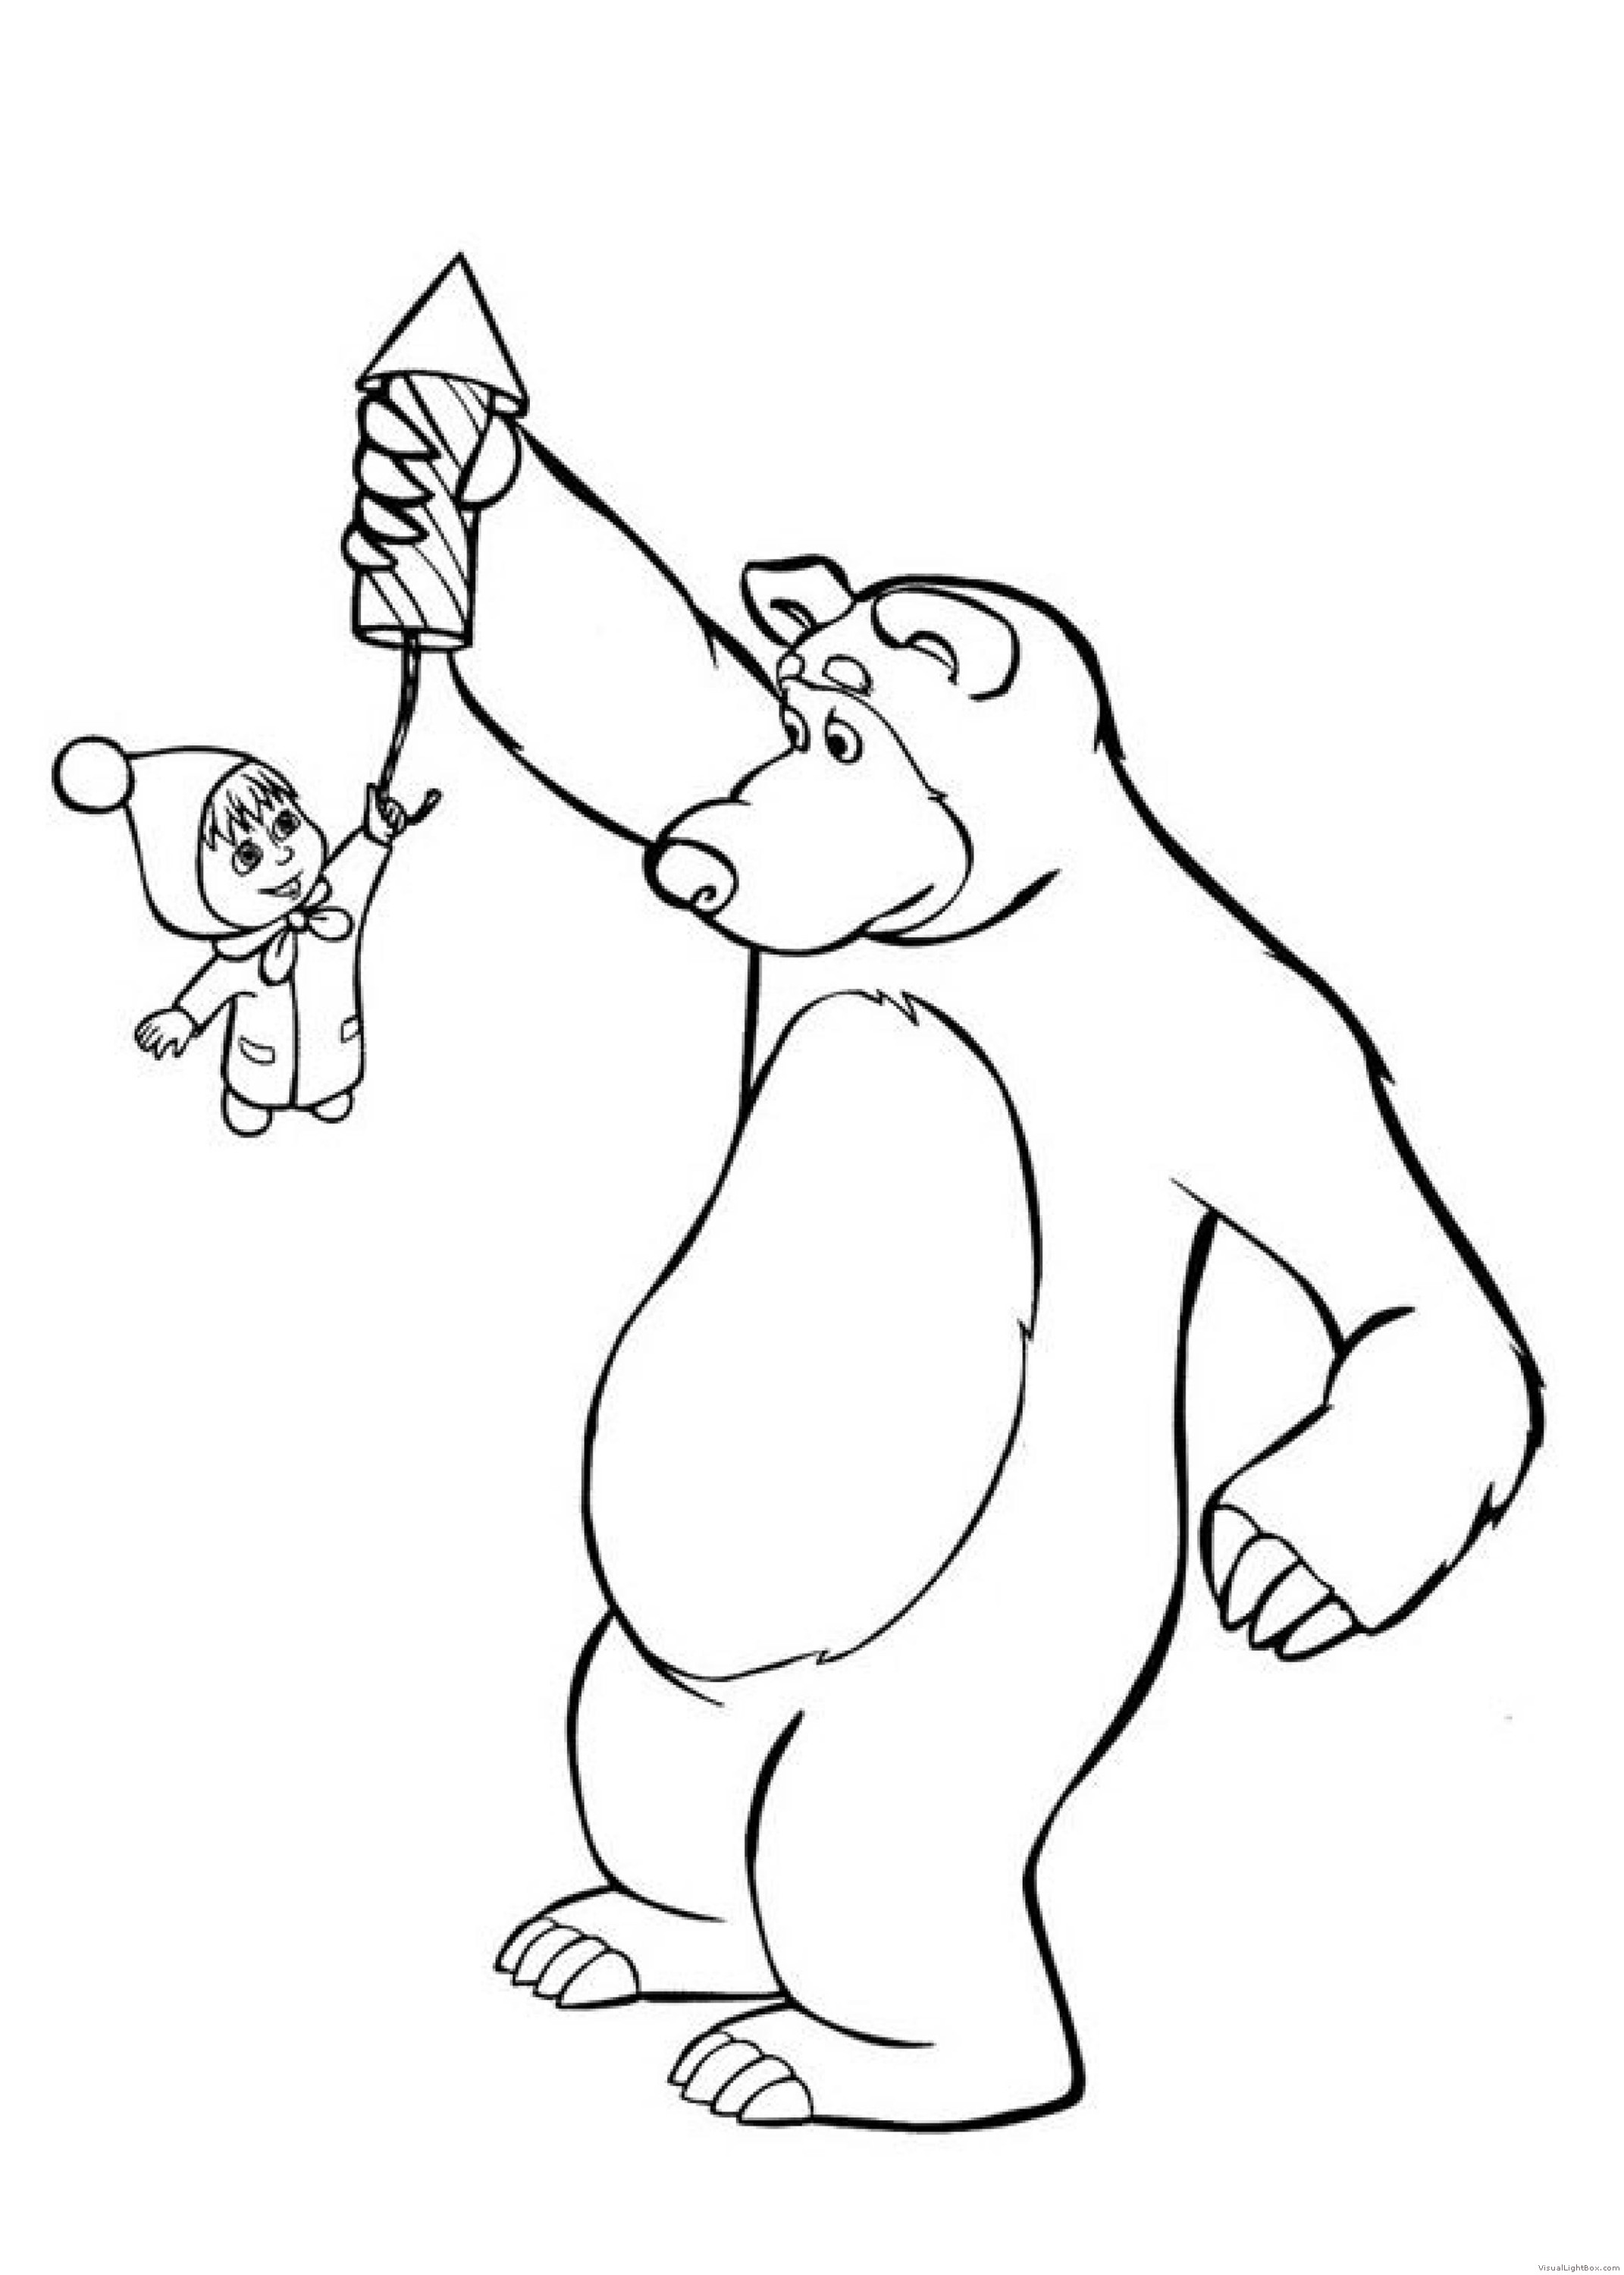 Маша и медведь печать. Маша и медведь рисунки для раскрашивания. Раскраска мишка из мультика Маша и медведь. Раскраска Маша и медведь печать. Картинки для раскрашивания для детей Маша и медведь.